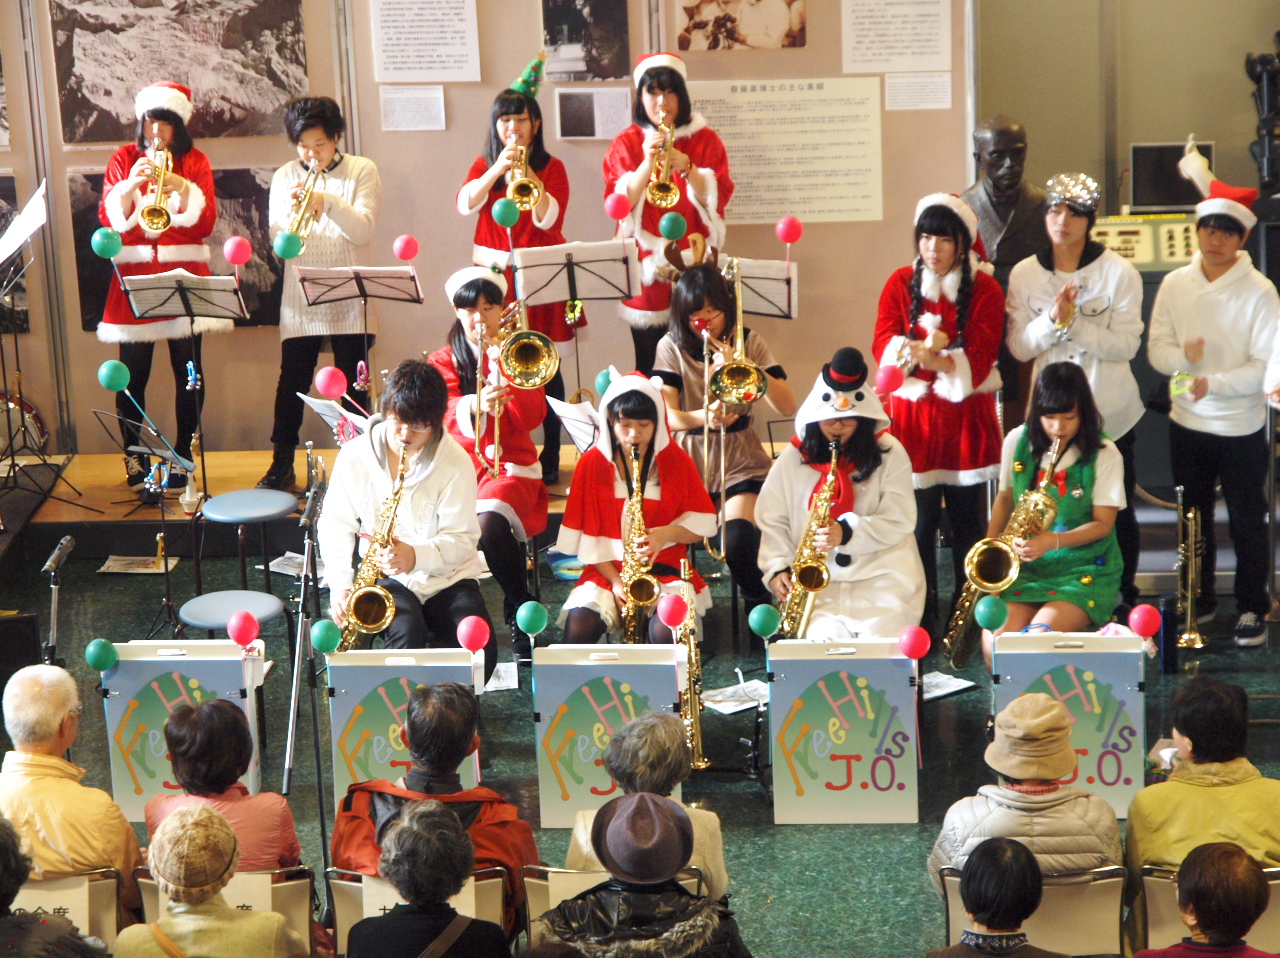 名古屋大学博物館コンサート -- ホンモノ標本に囲まれた中で、ホンモノの音色を聞く --